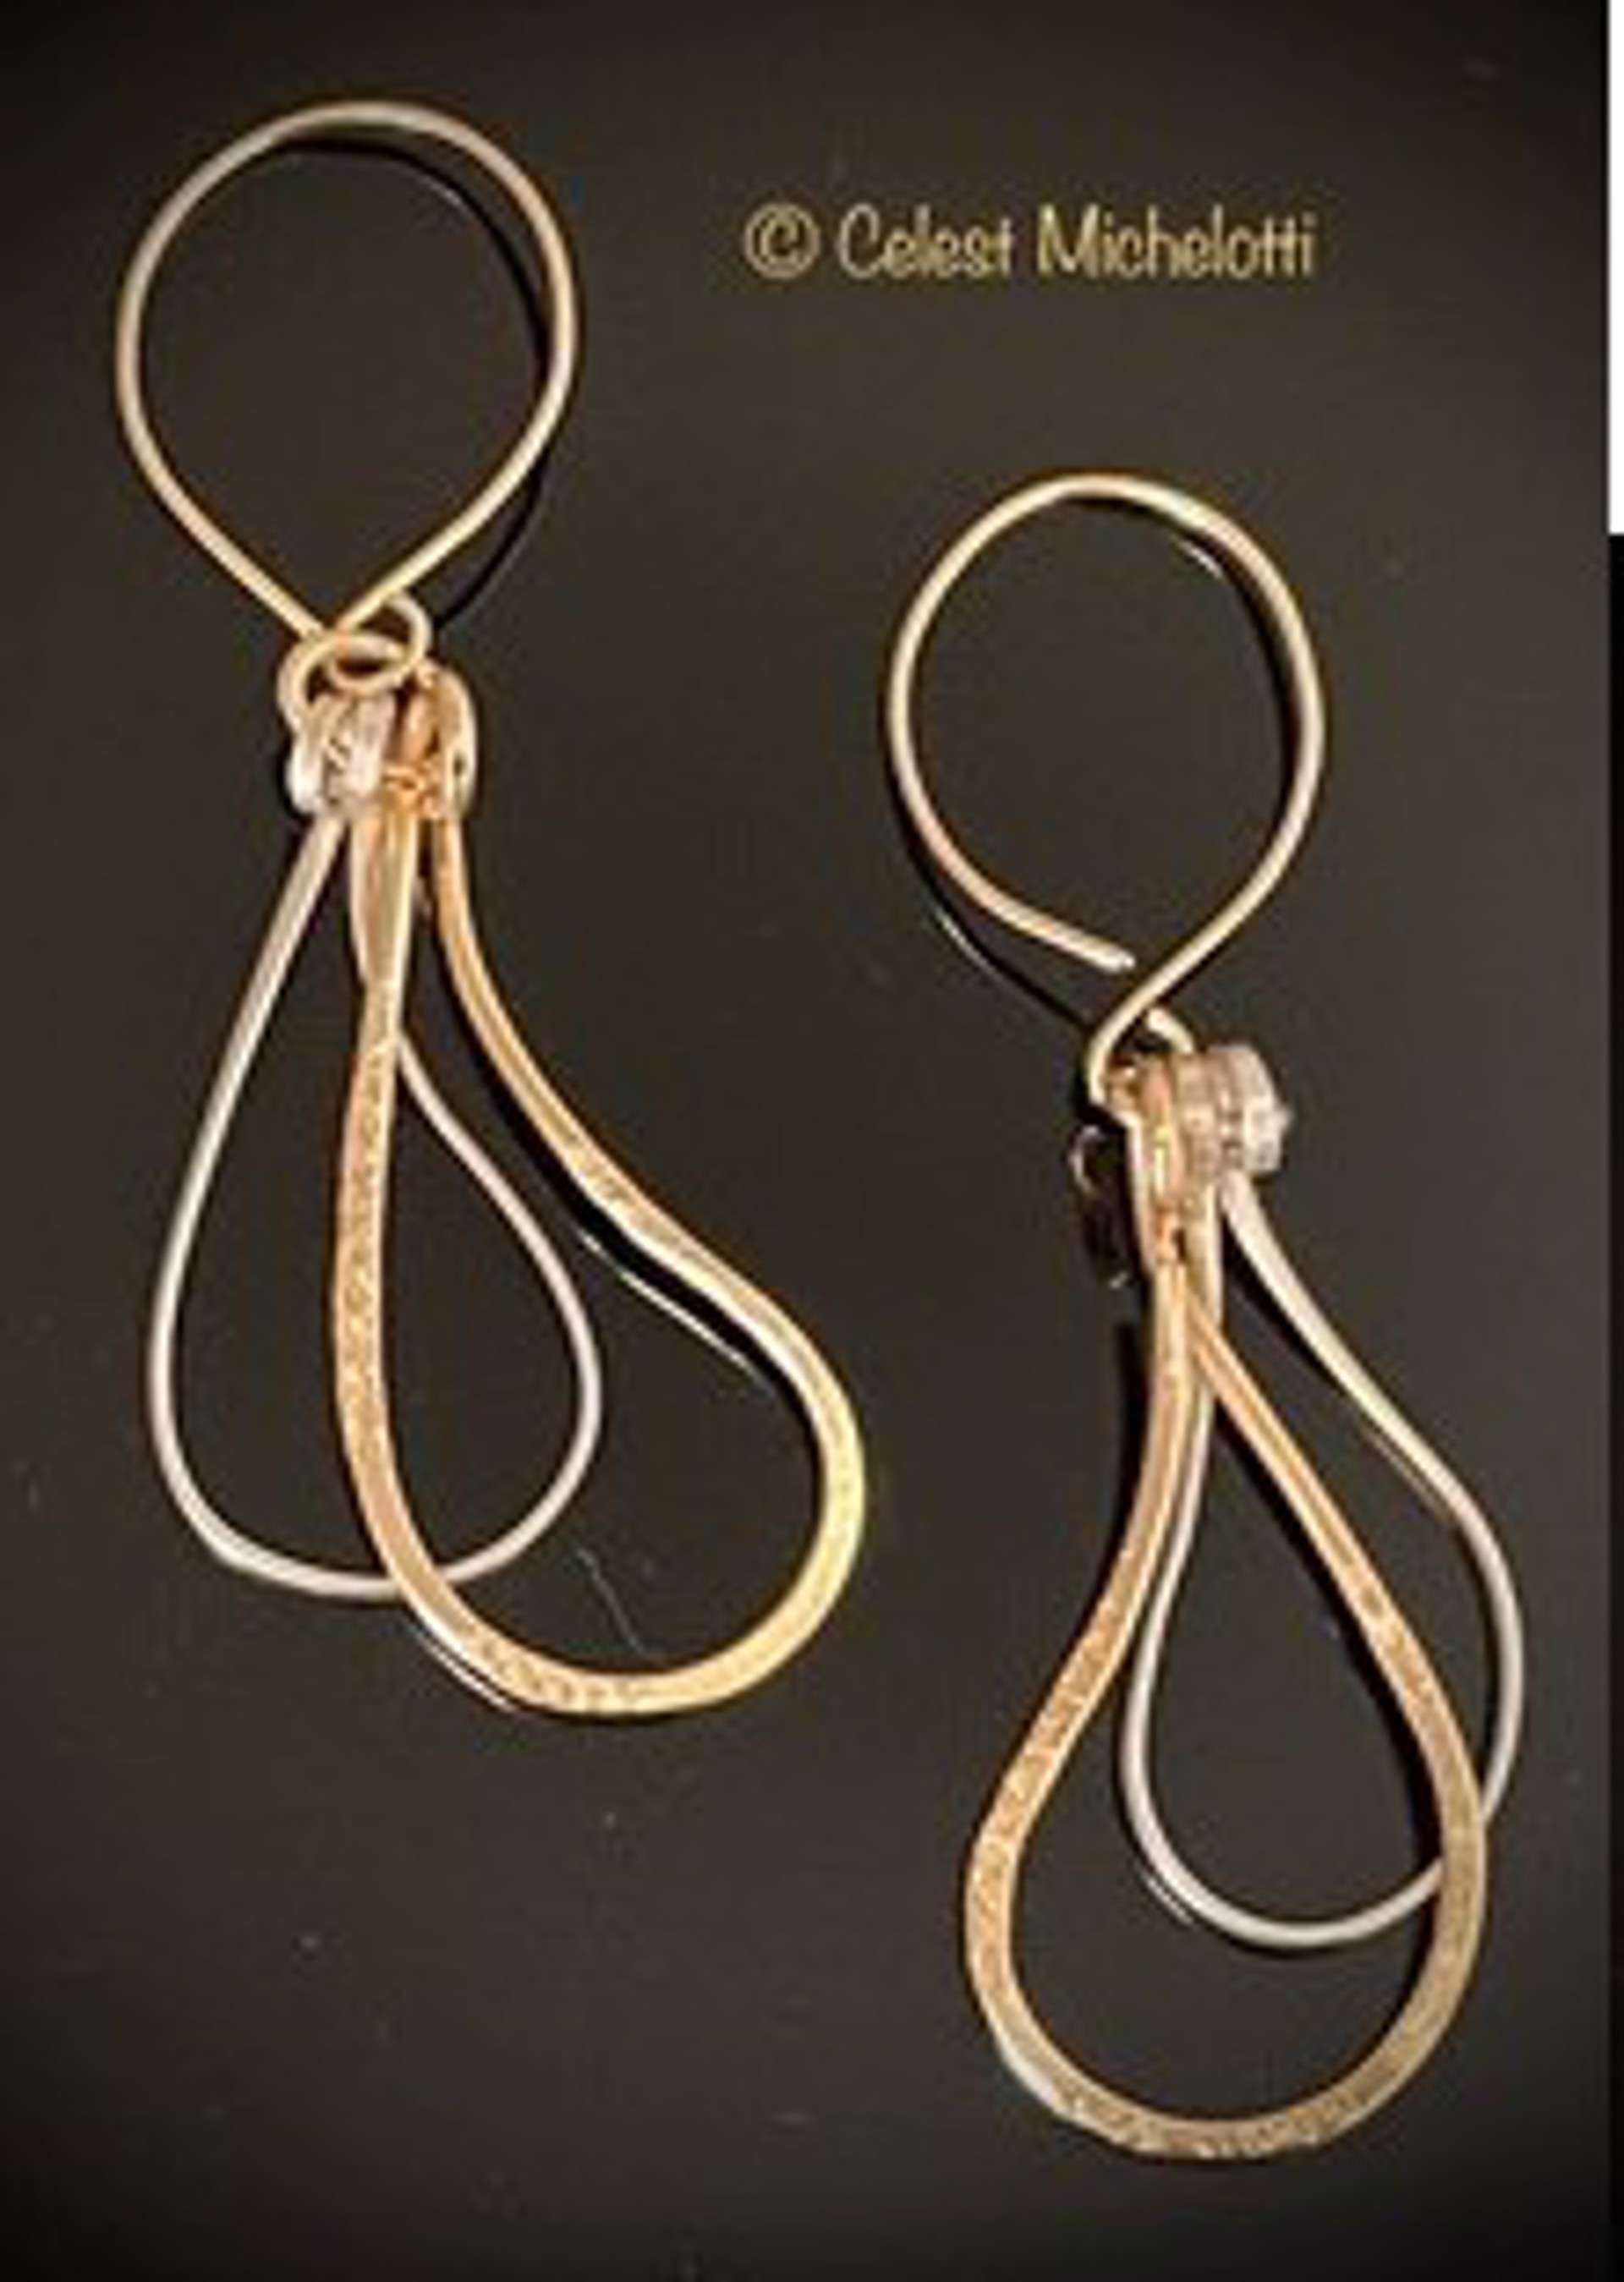 Swirls earrings, double drop by Celest Michelotti